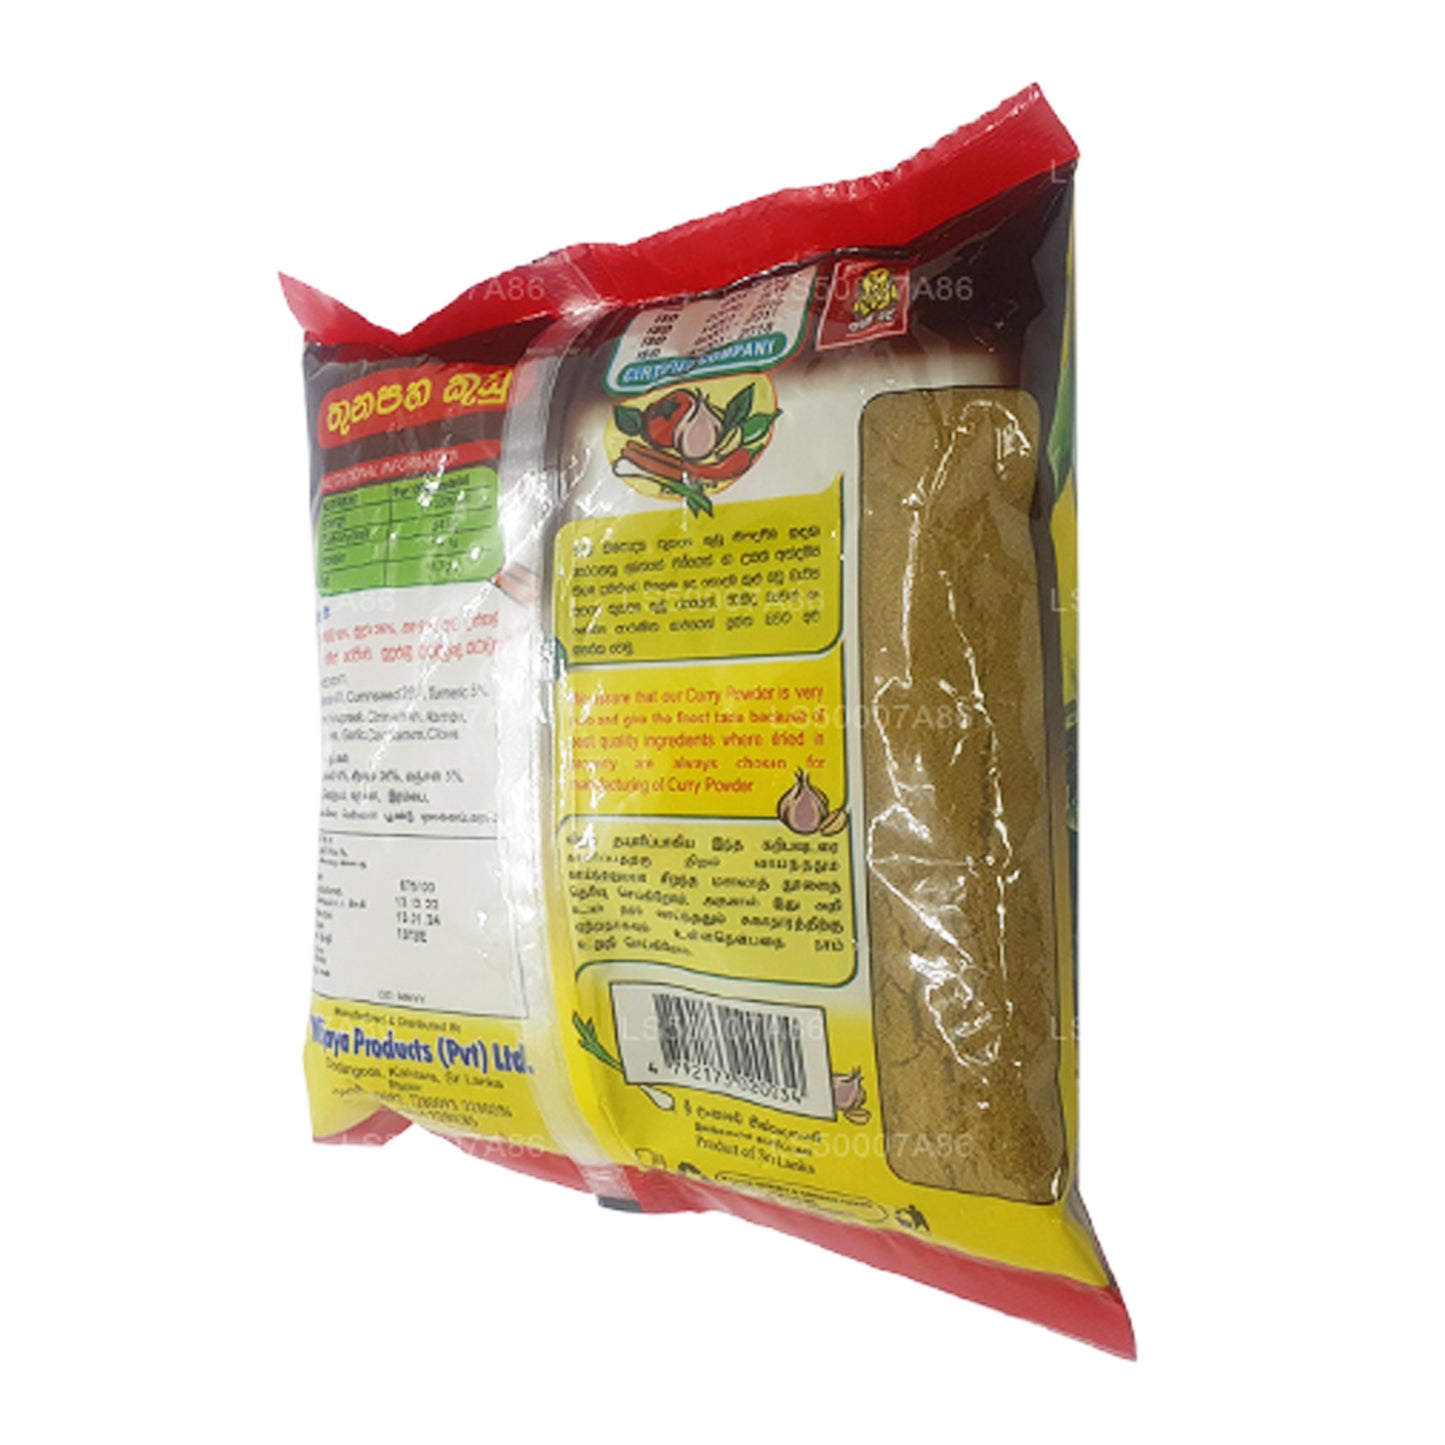 Curry Wijaya en polvo (500 g)